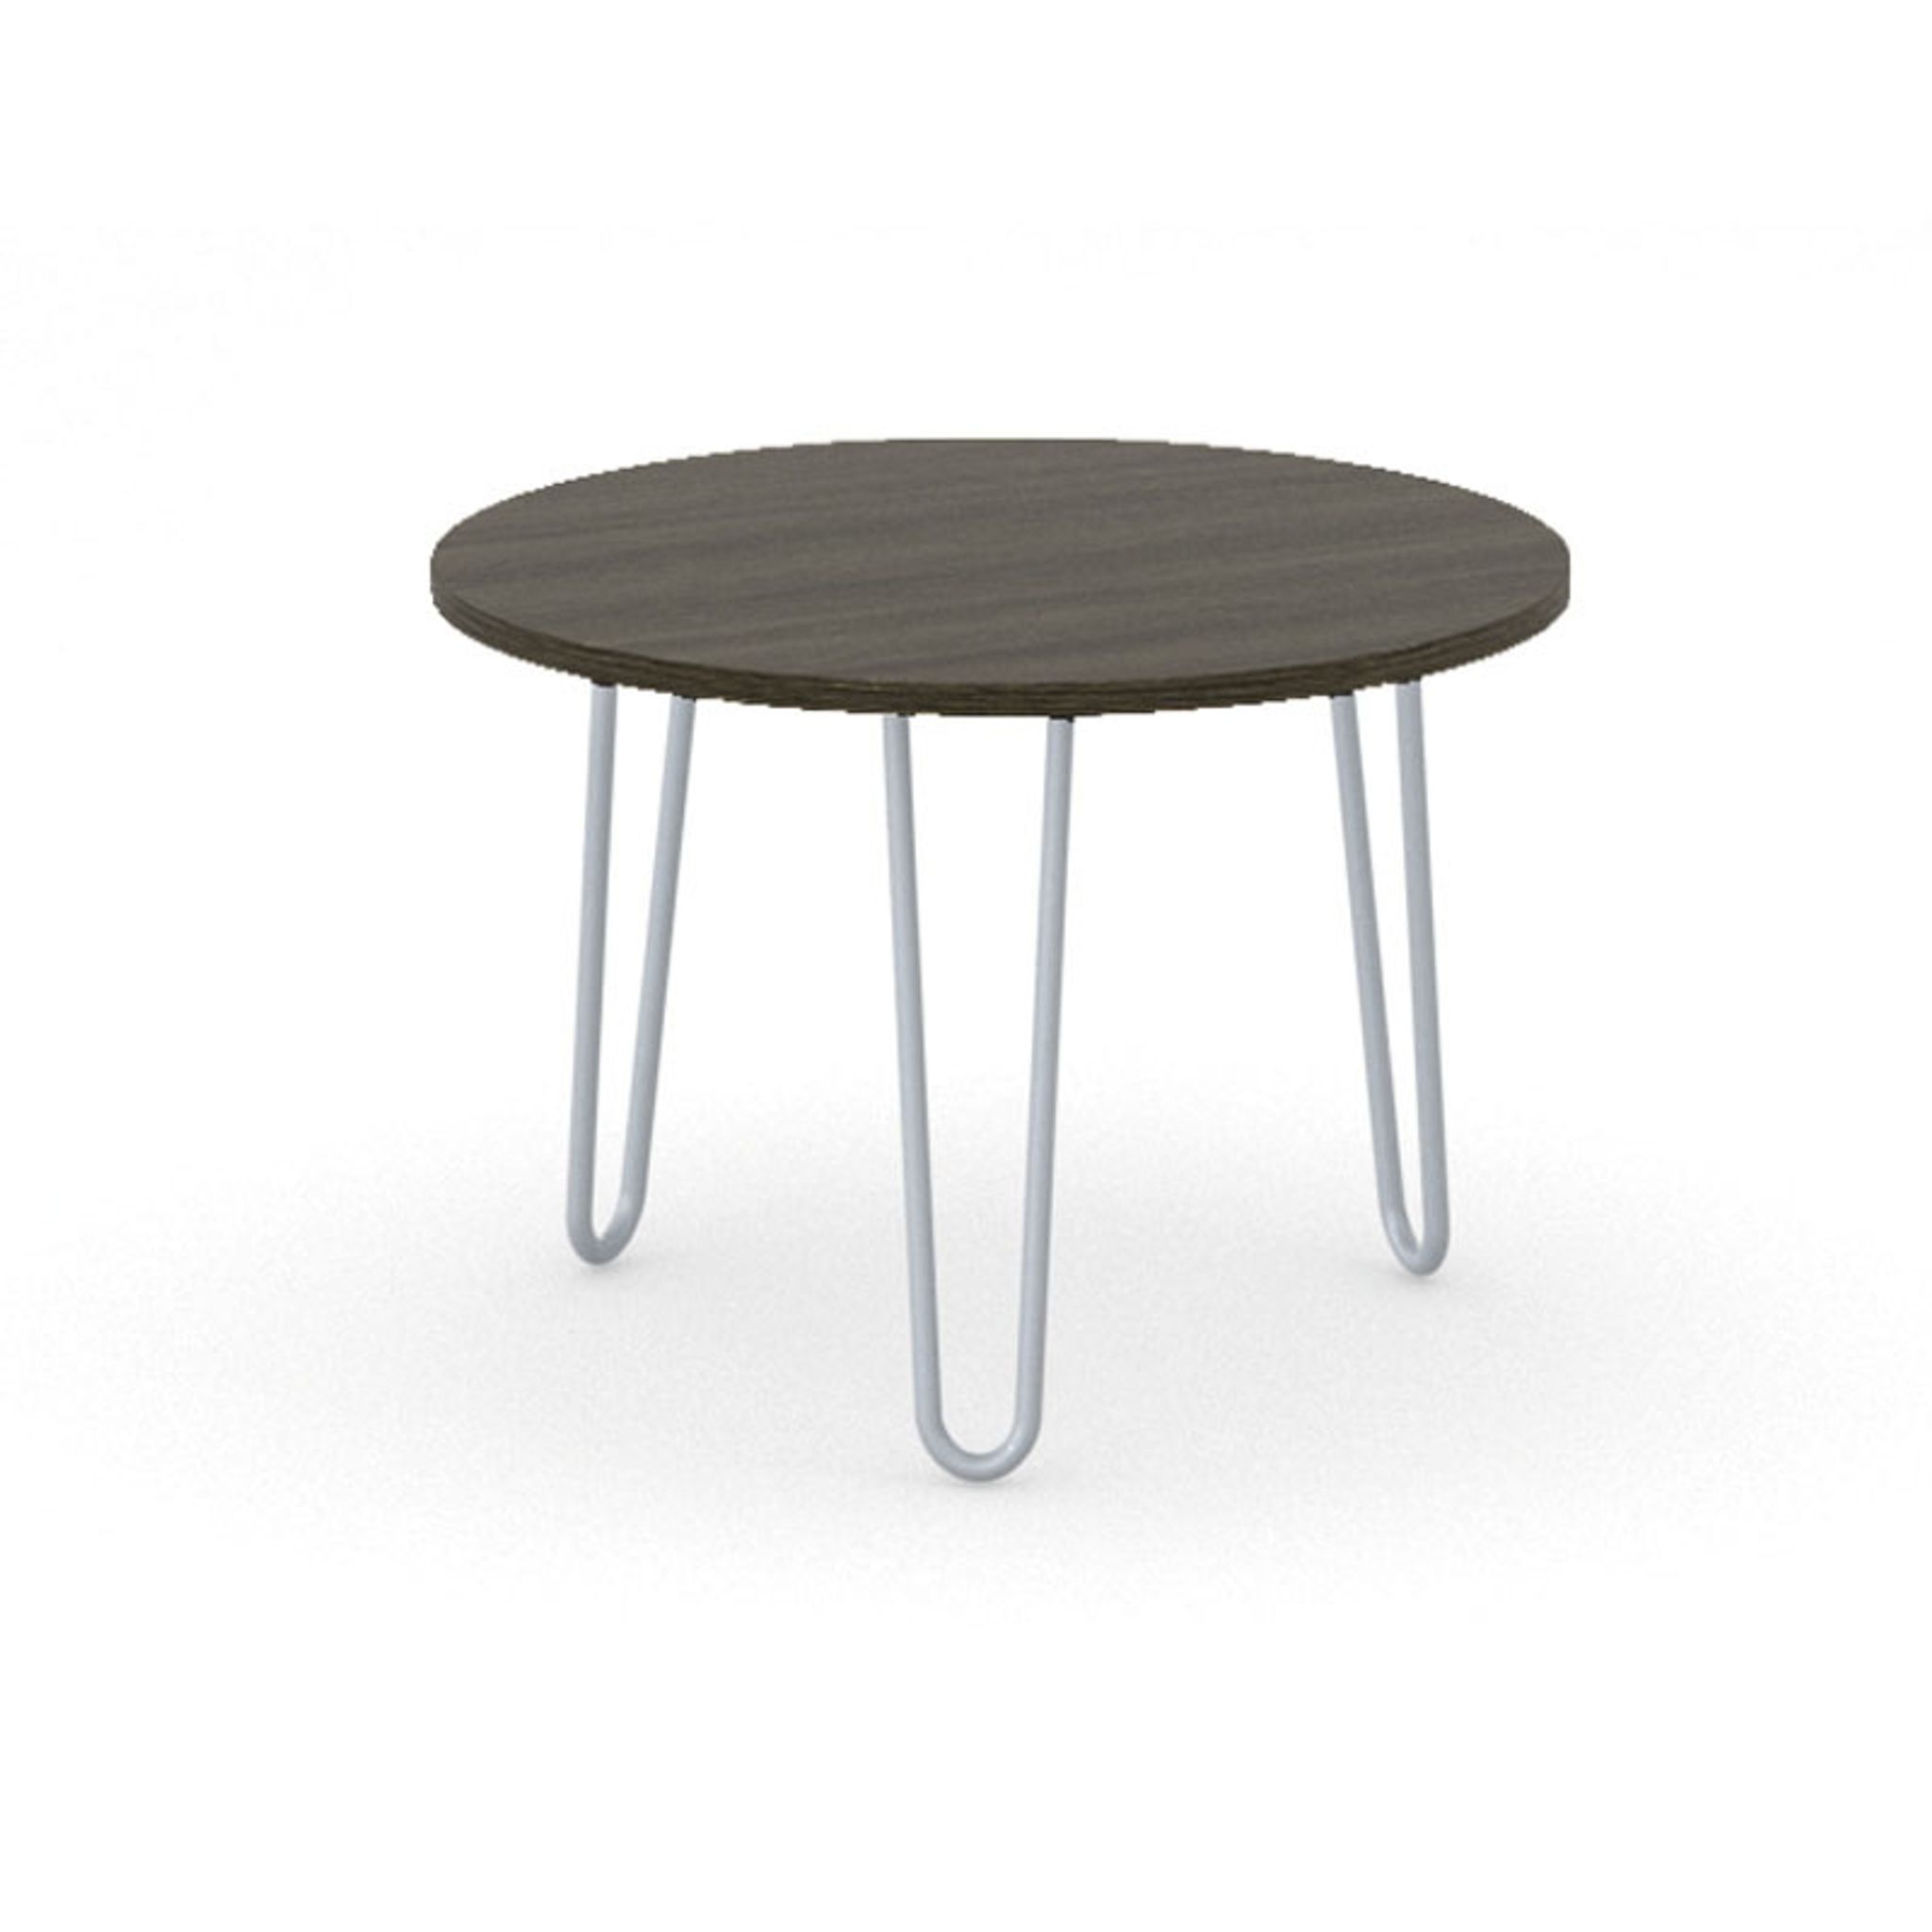 Okrúhly konferenčný stôl SPIDER, priemer 600 mm, sivo-strieborná podnož, doska wenge